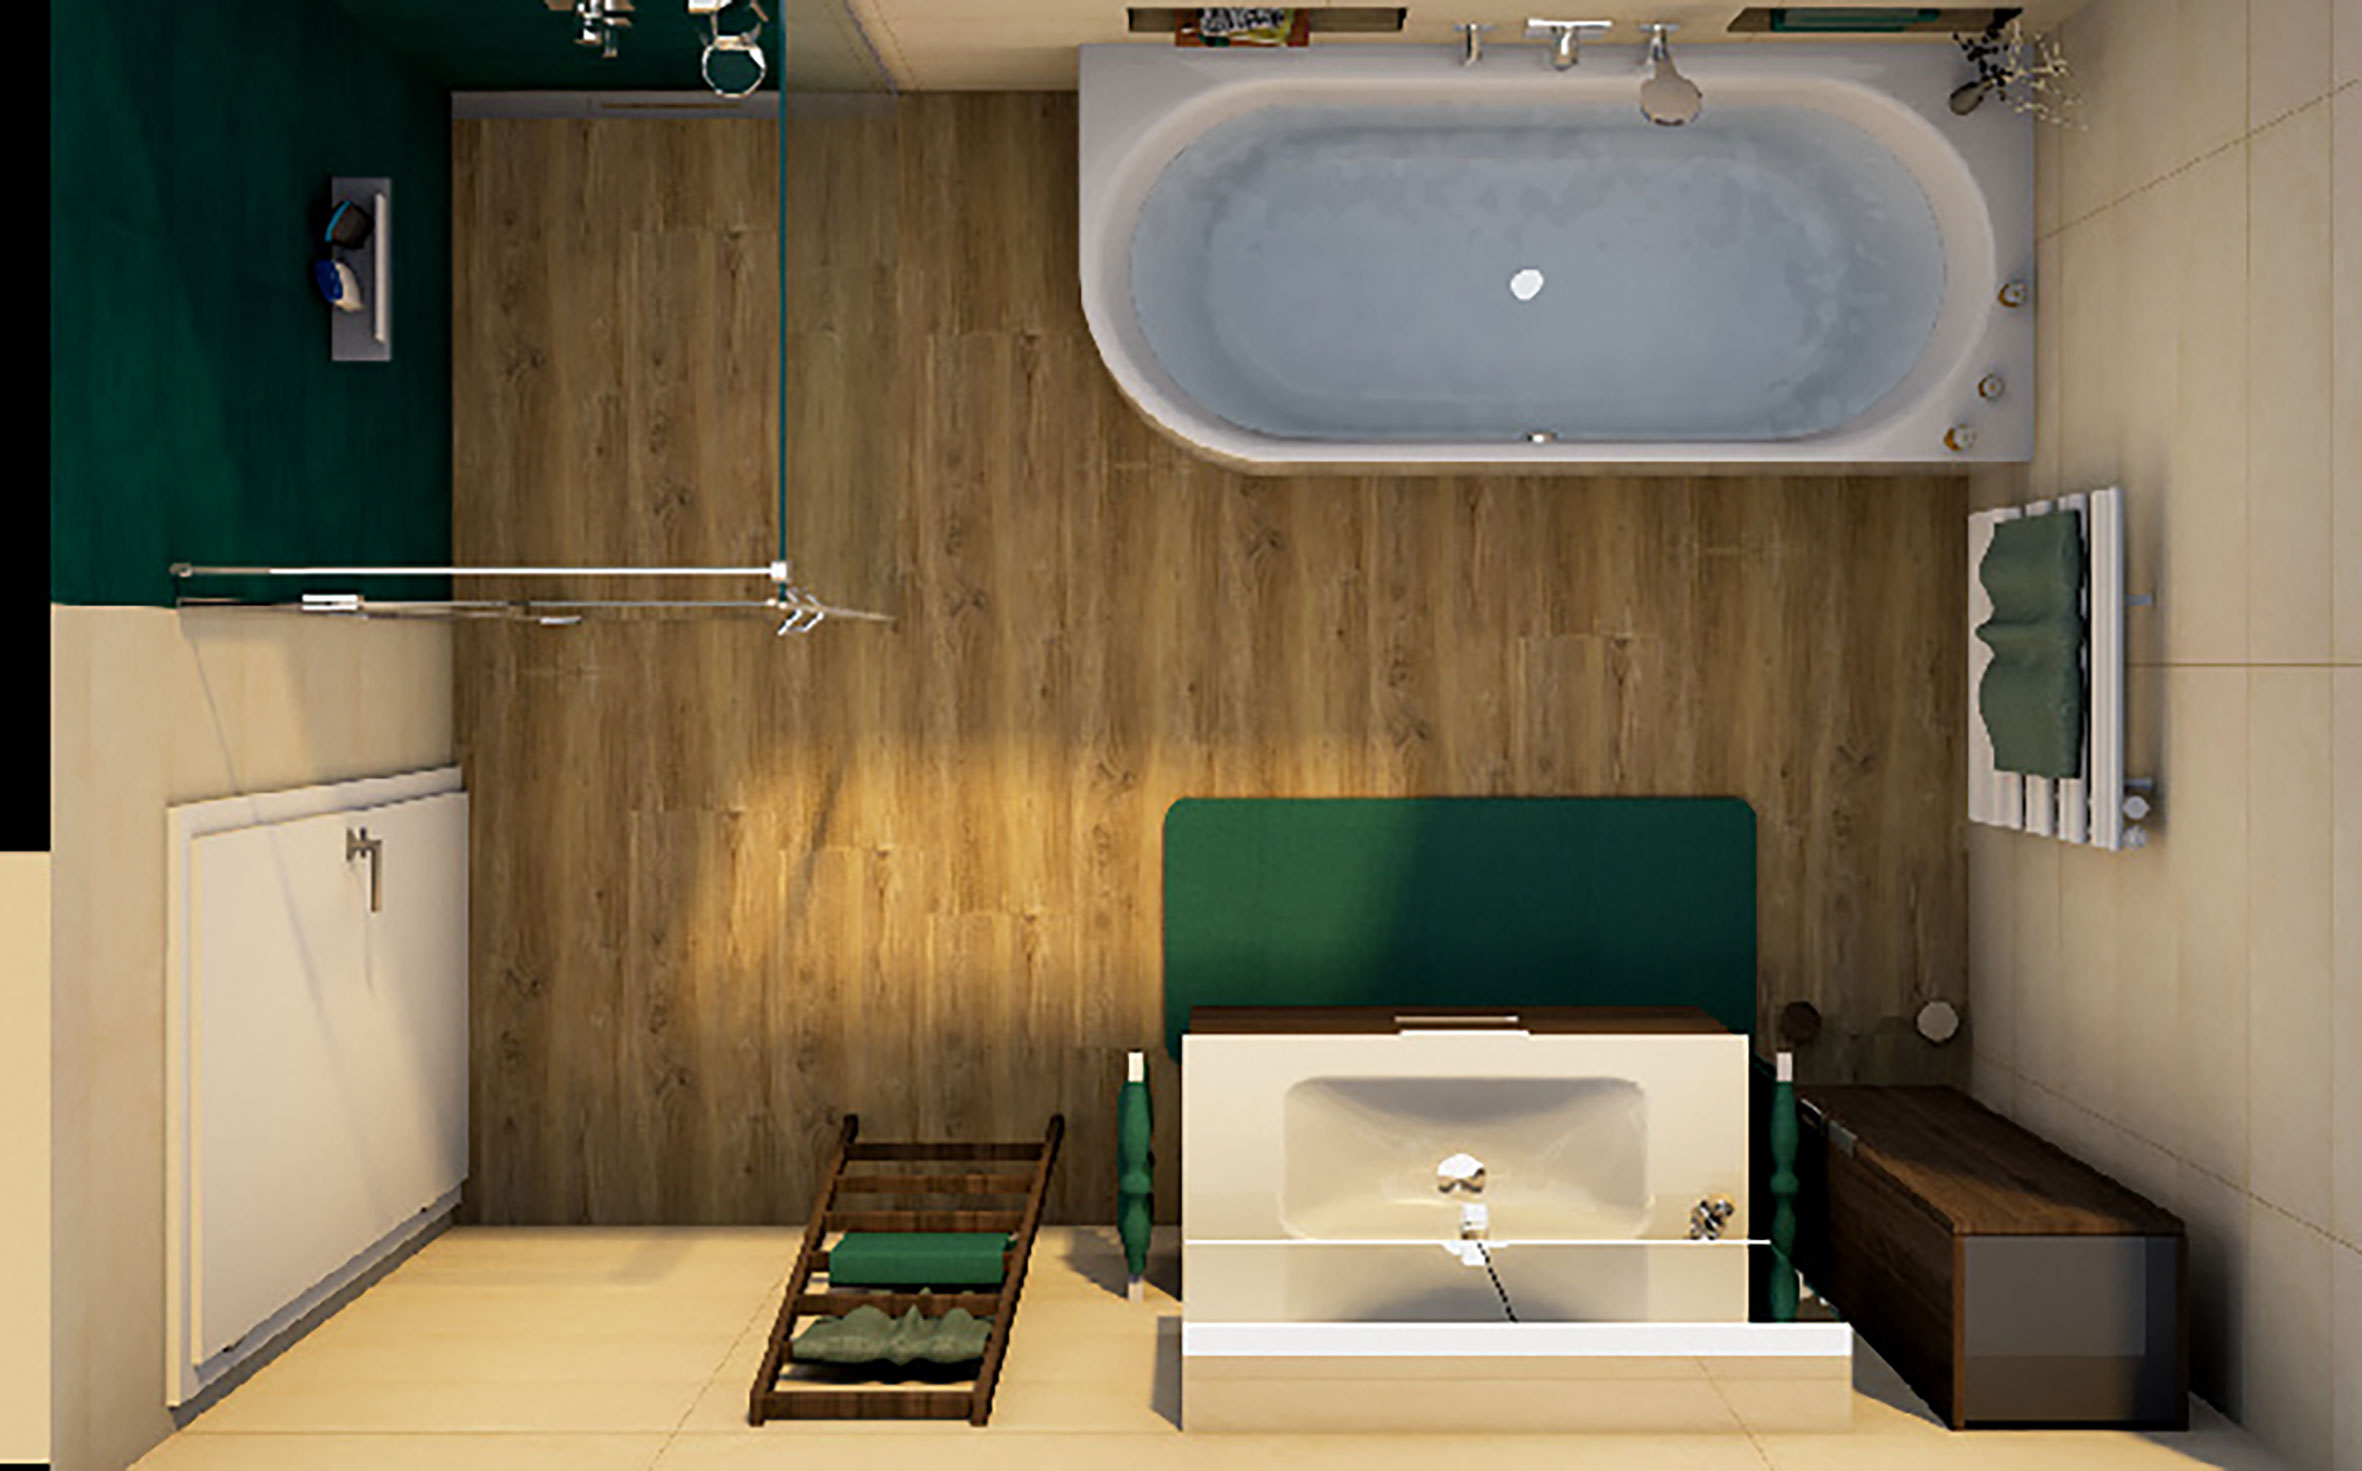 Planungsbeispiel: platzsparendes Bad im modernen Stil, Obenansicht